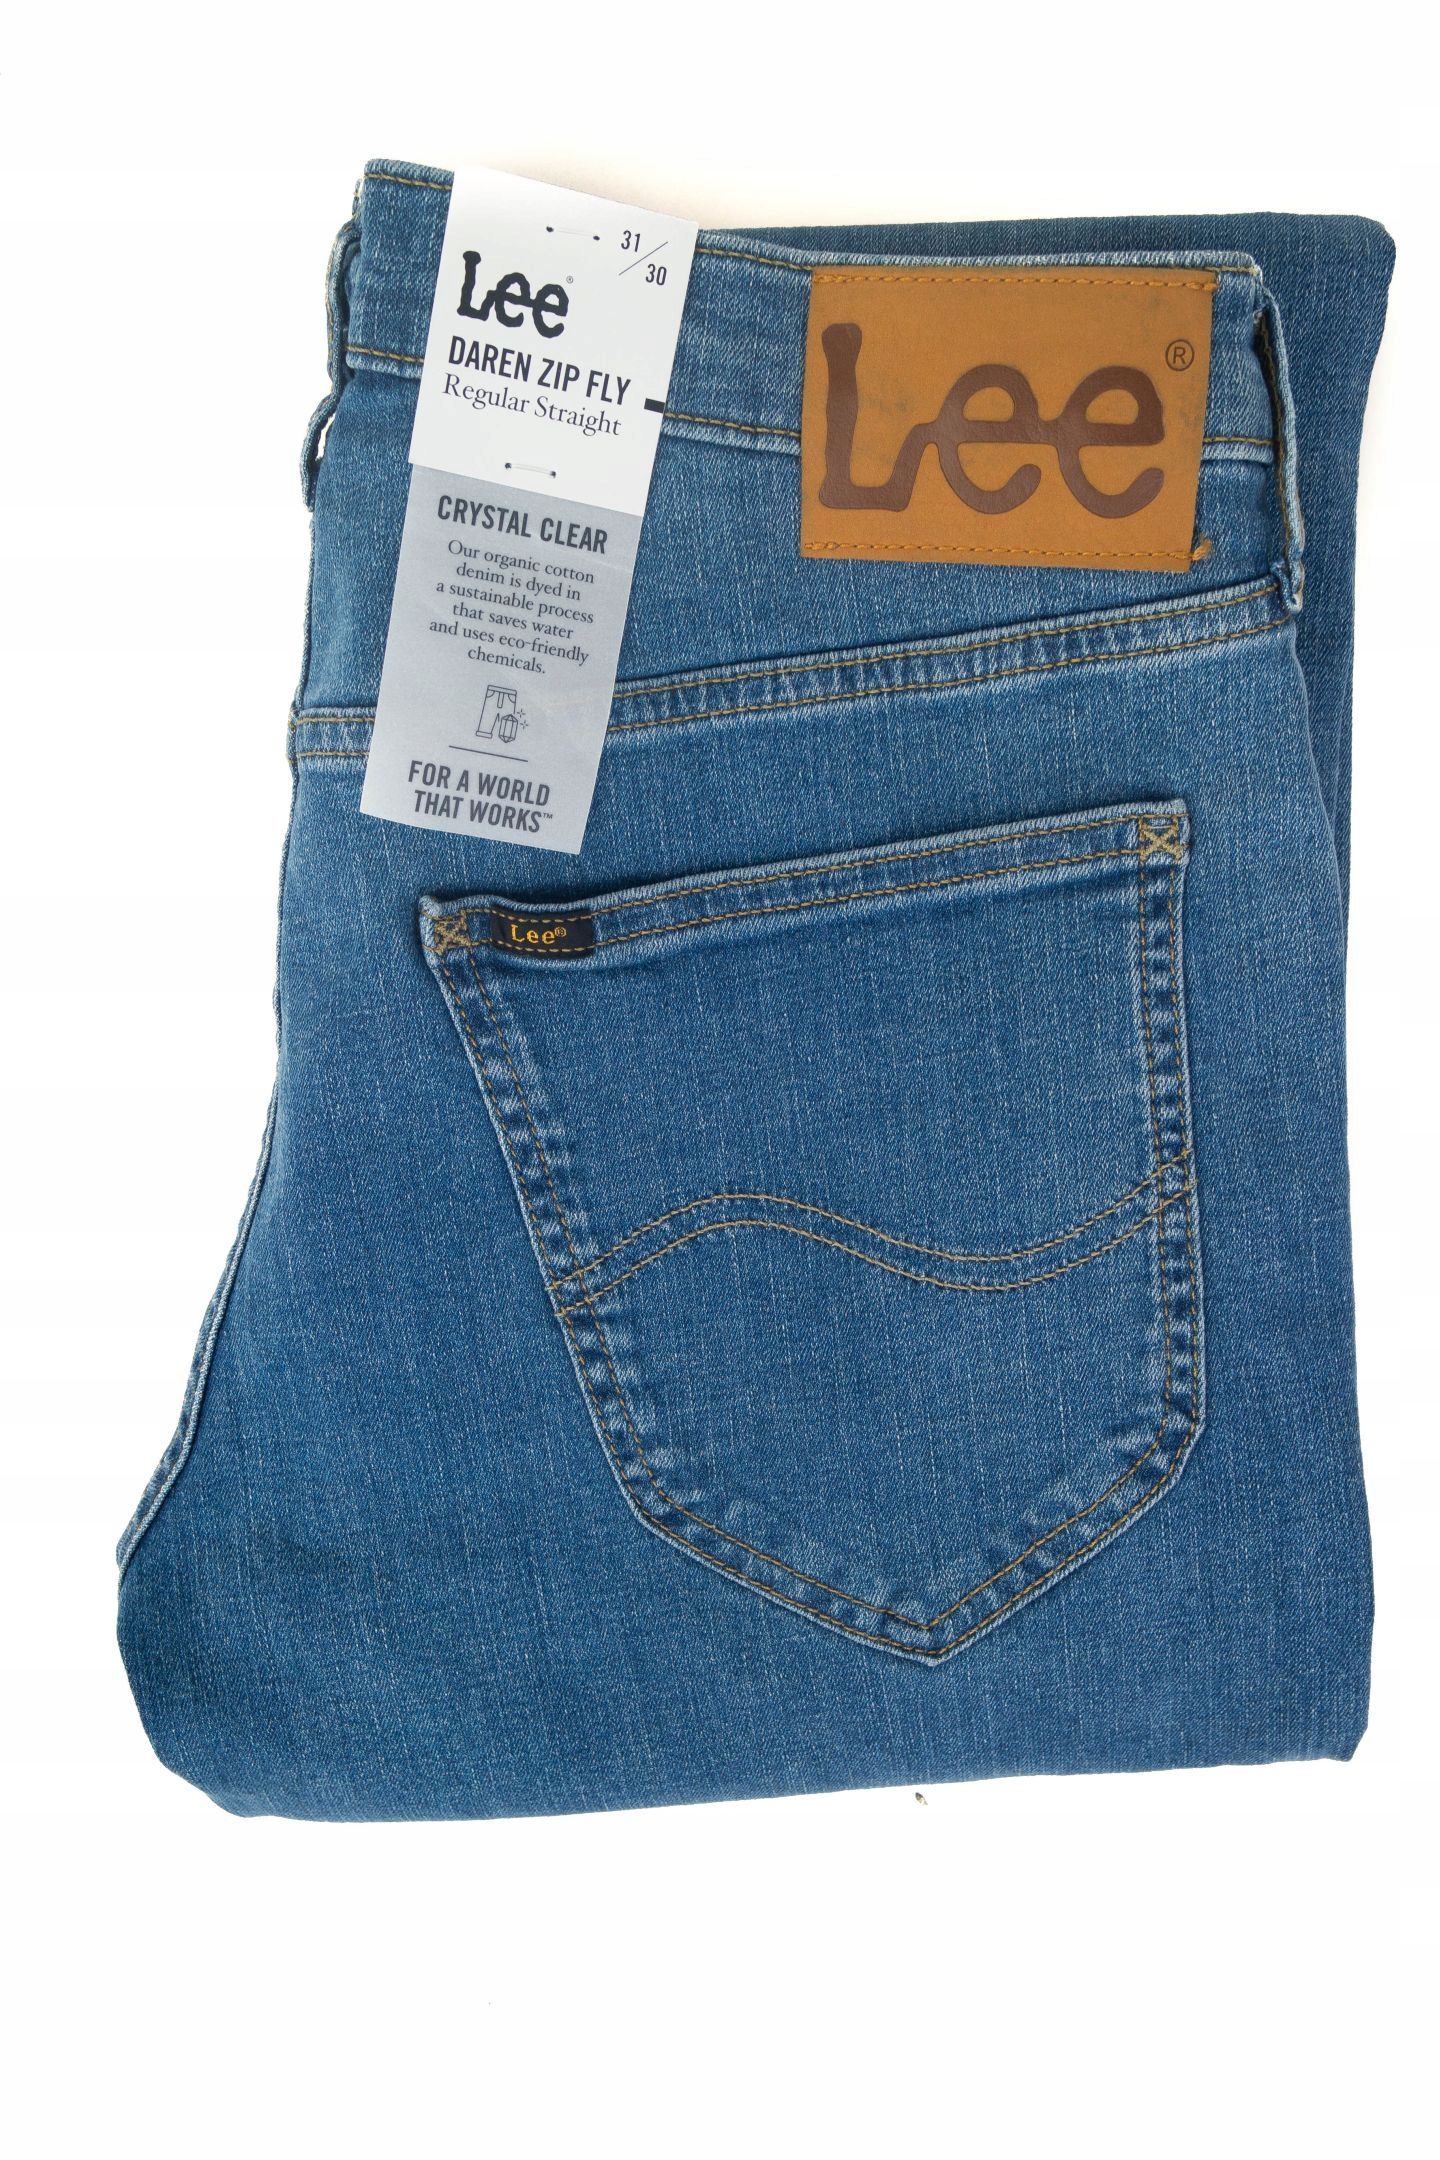 Spodnie Lee Daren Regular Light Stone W42 L34 L707NL66